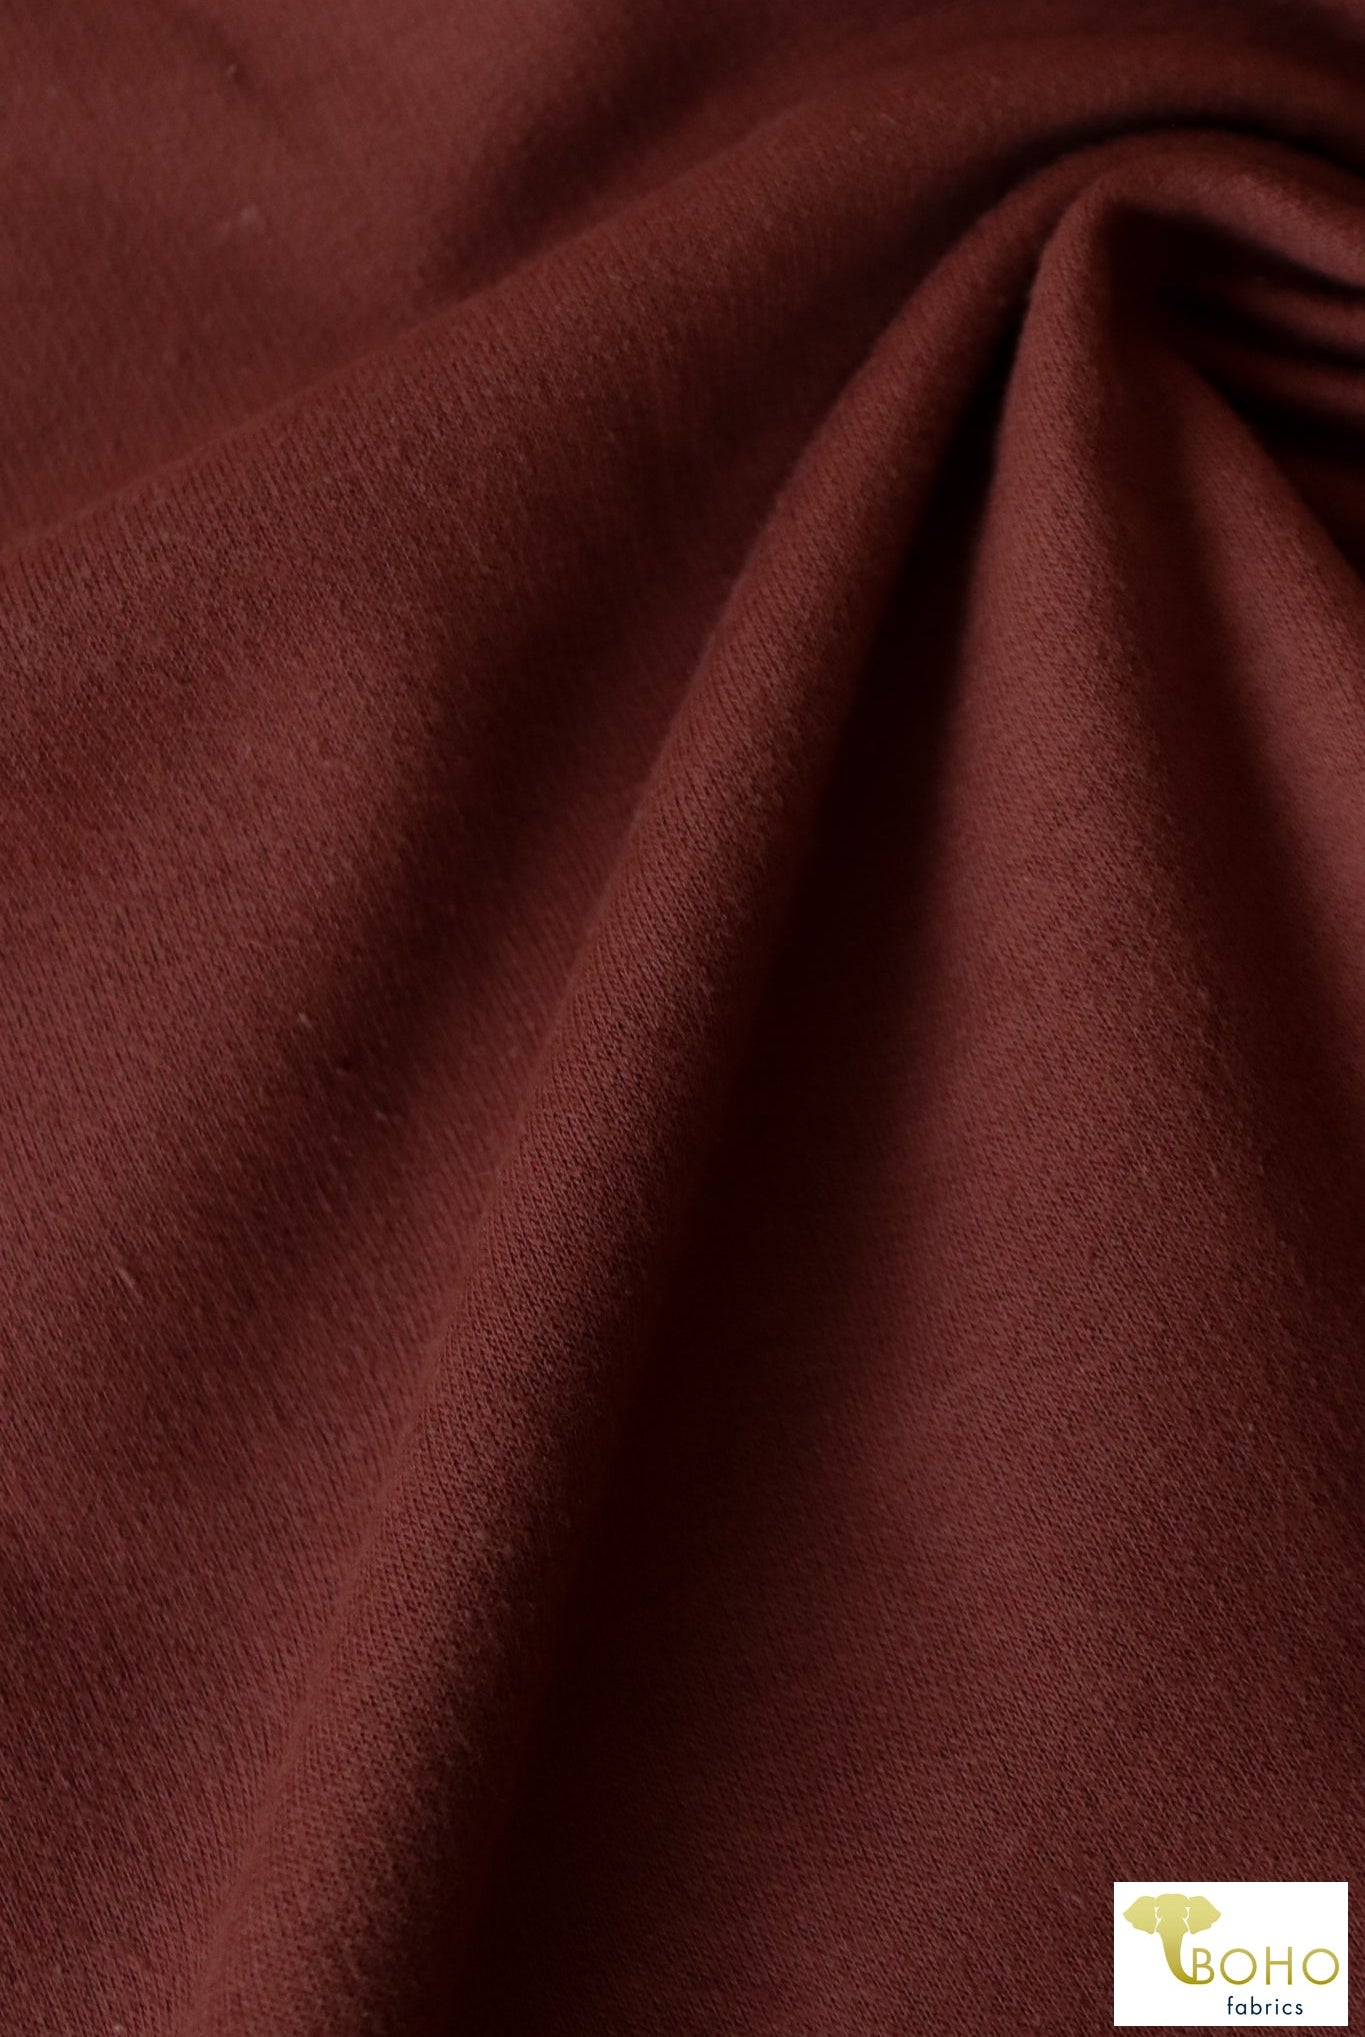 Mahogany Brown. Cotton French Terry. CLFT-938-MSLA - Boho Fabrics